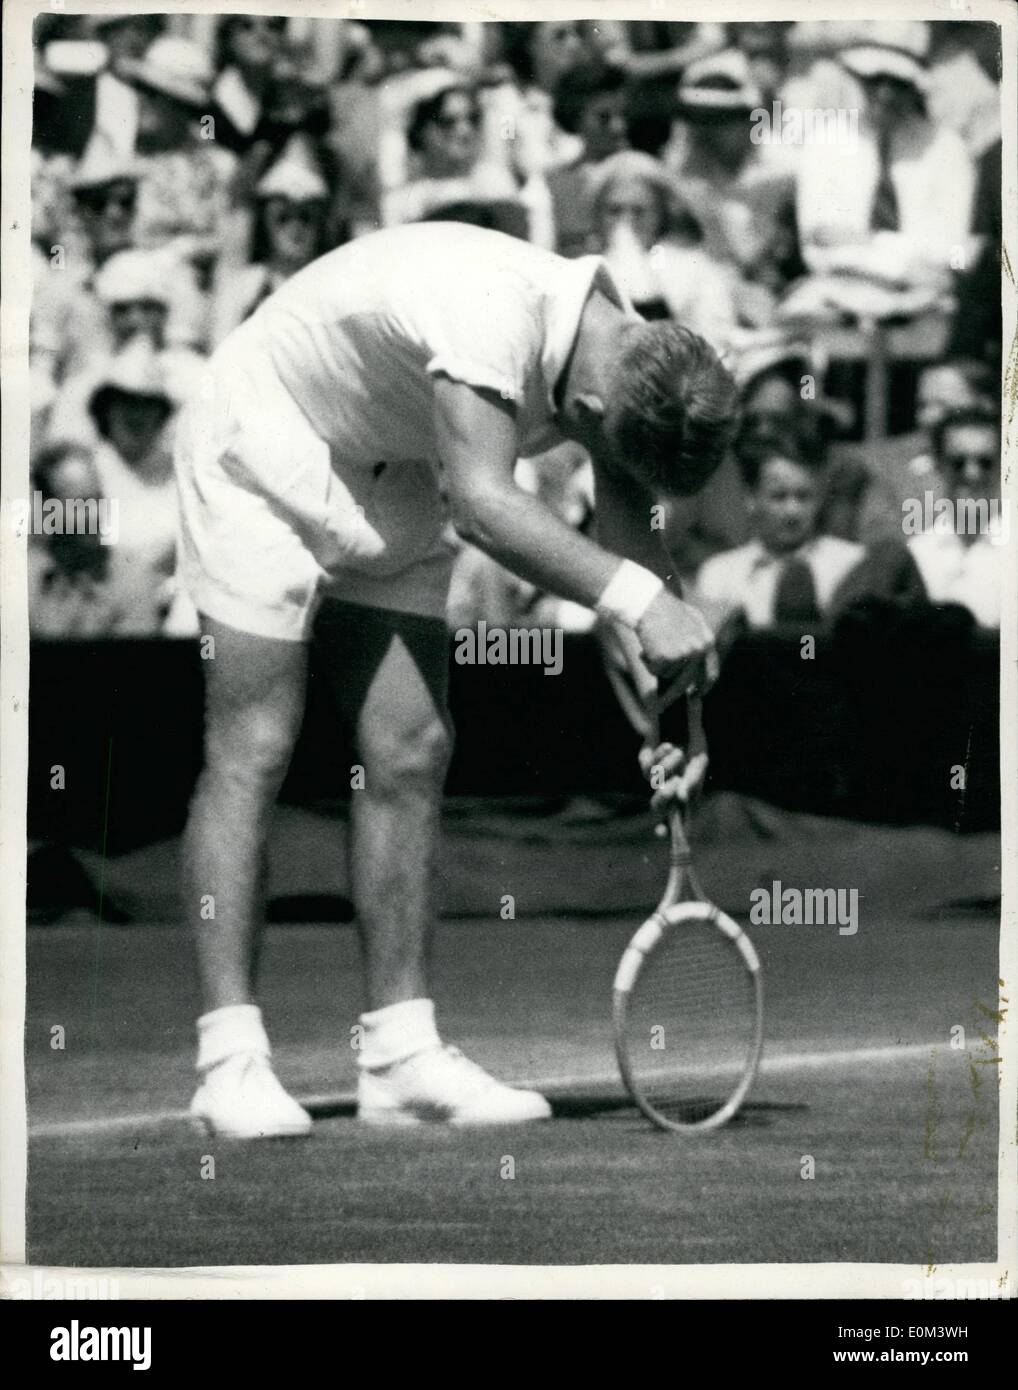 6. Juni 1953 - Vic Seixas von der US-Beats Lew Hoad von Australien während Männer Einzel in Wimbledon: Vic Seixas der Vereinigten Staaten schlagen Lew Hoad Australiens in fünf Sätzen - in ihrer Männer-Einzel-Match der Wimbledon Championships heute Nachmittag. Foto zeigt Lew Hoad auf seinen Schläger - zwischen den Sätzen - während des Spiels heute stützt. Stockfoto